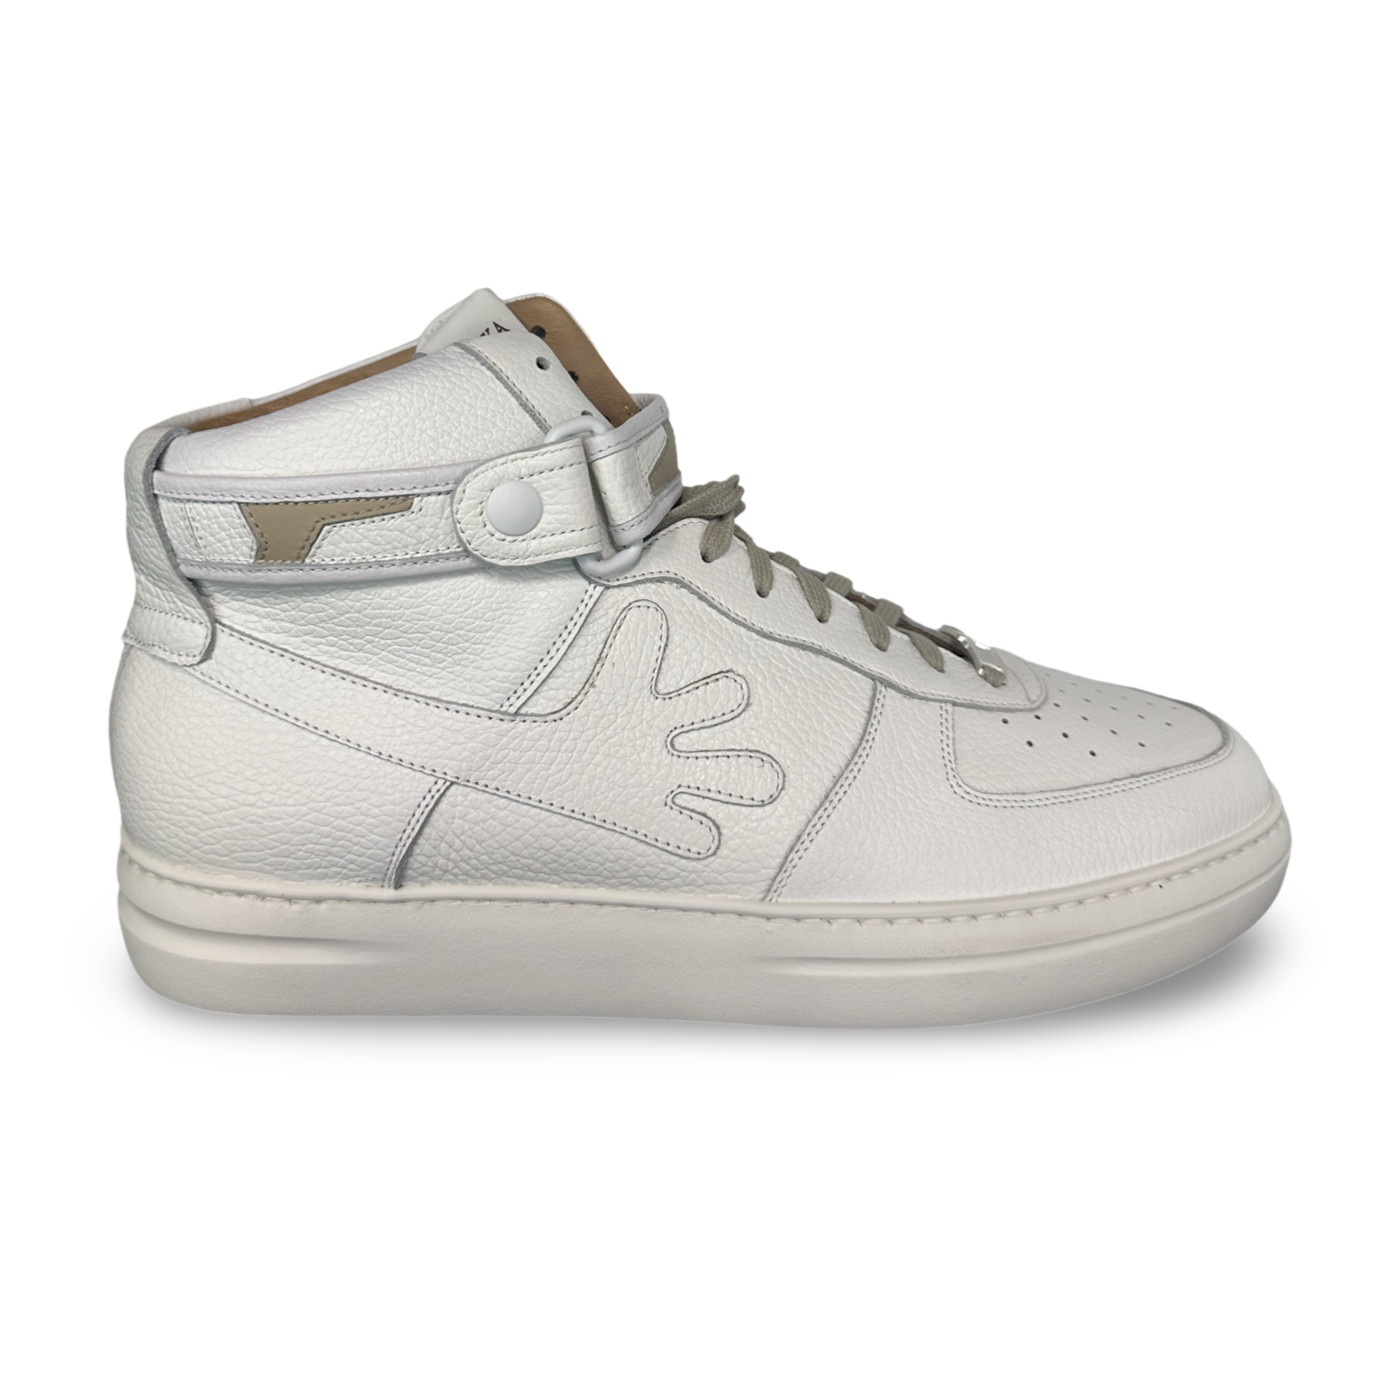 Myaka Moonwalker High Top Sneaker Off White